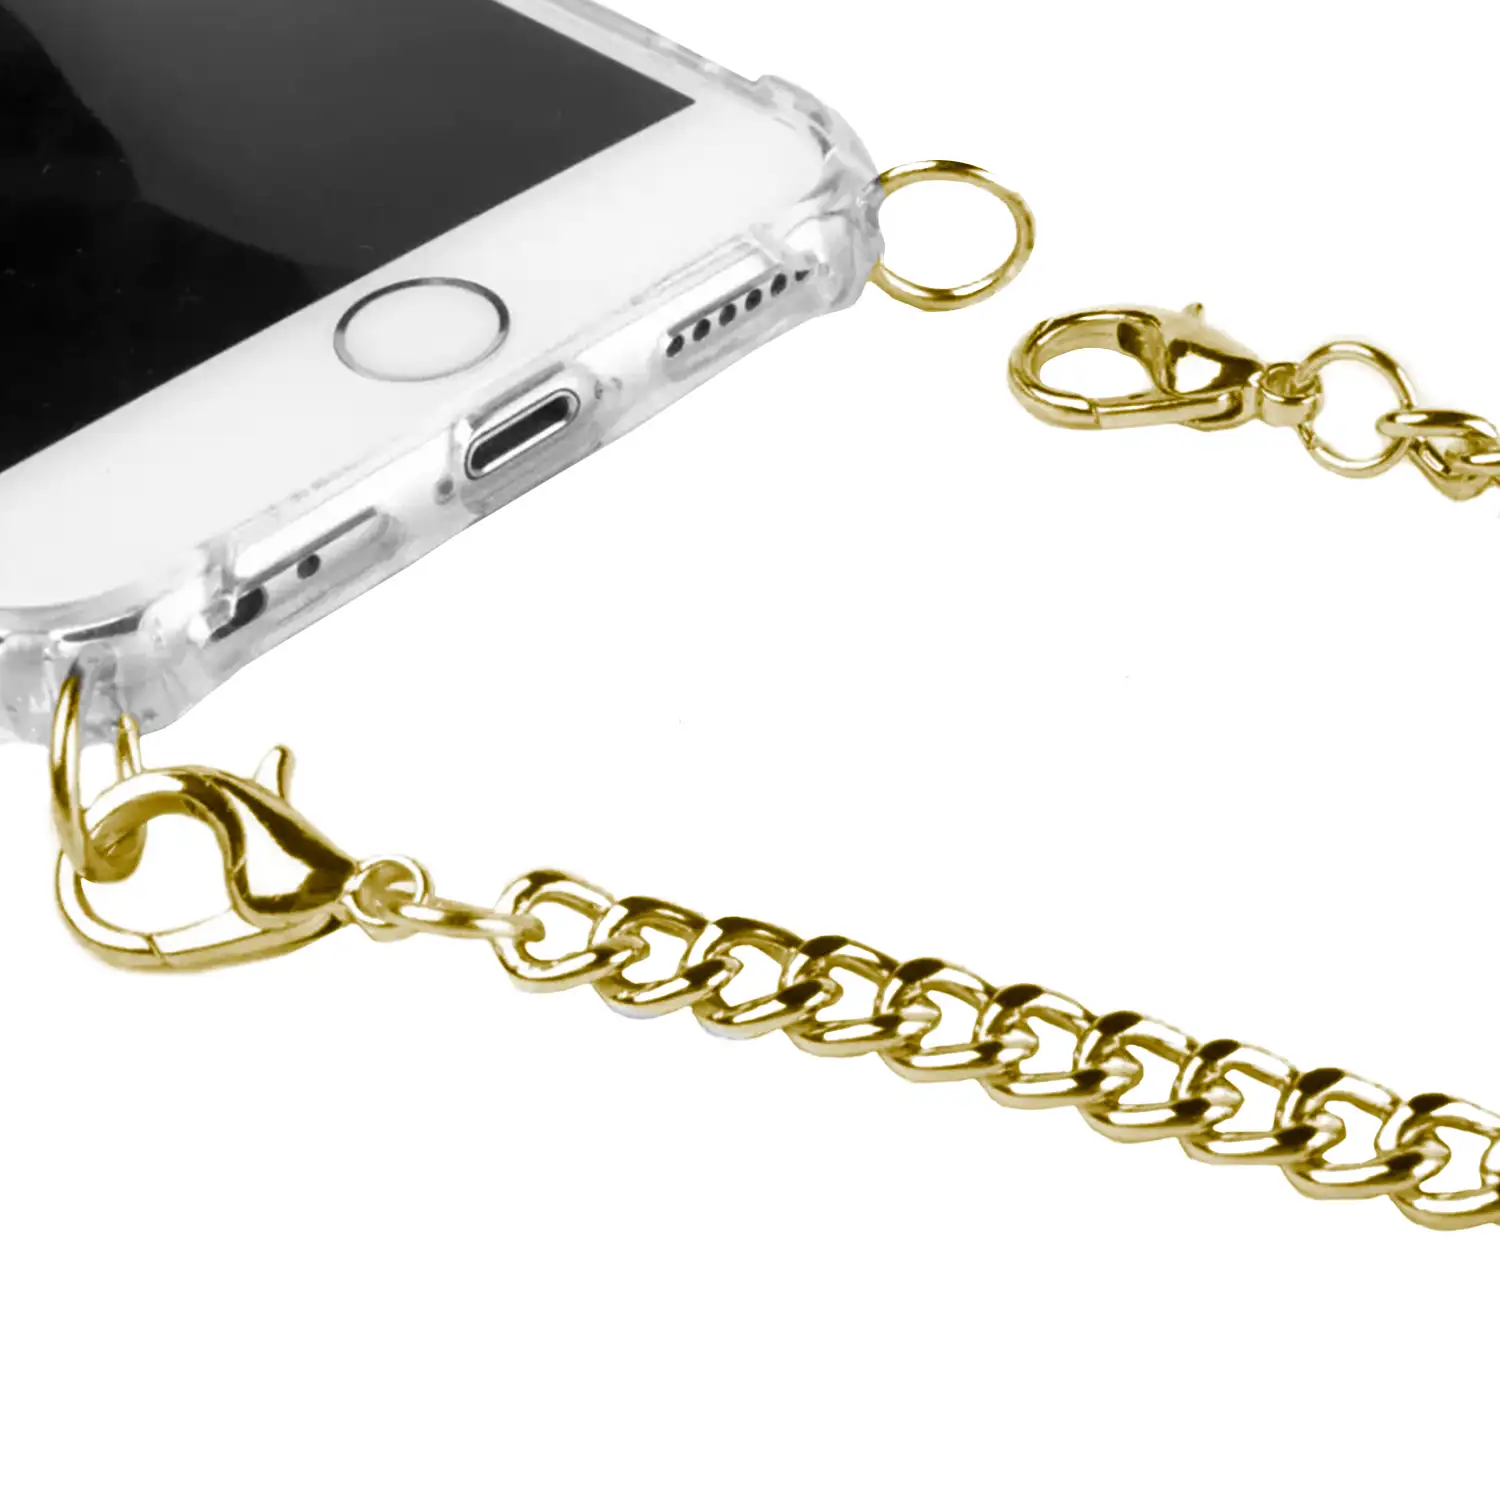 Carcasa transparente iPhone 11 Pro Max con colgante cadena metálica.  Accesorio de moda, ajuste perfecto y